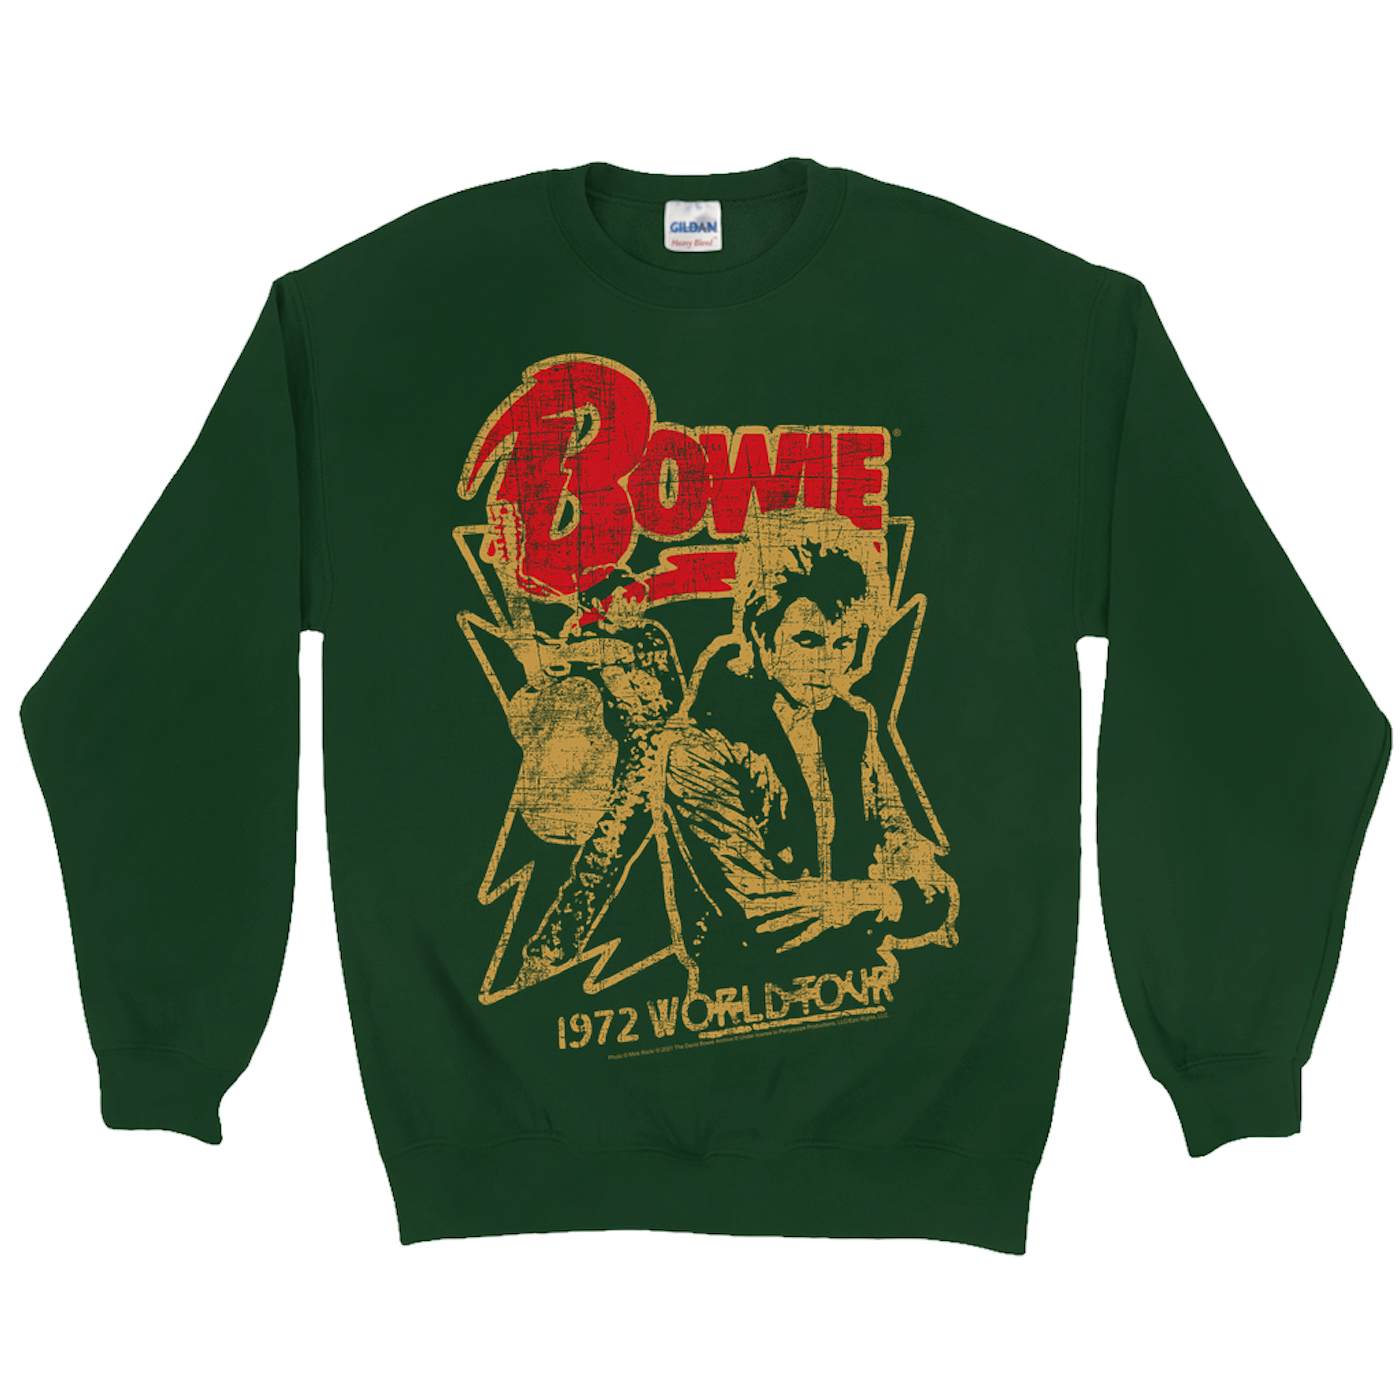 David Bowie Sweatshirt | 1972 World Tour Design Distressed David Bowie Sweatshirt